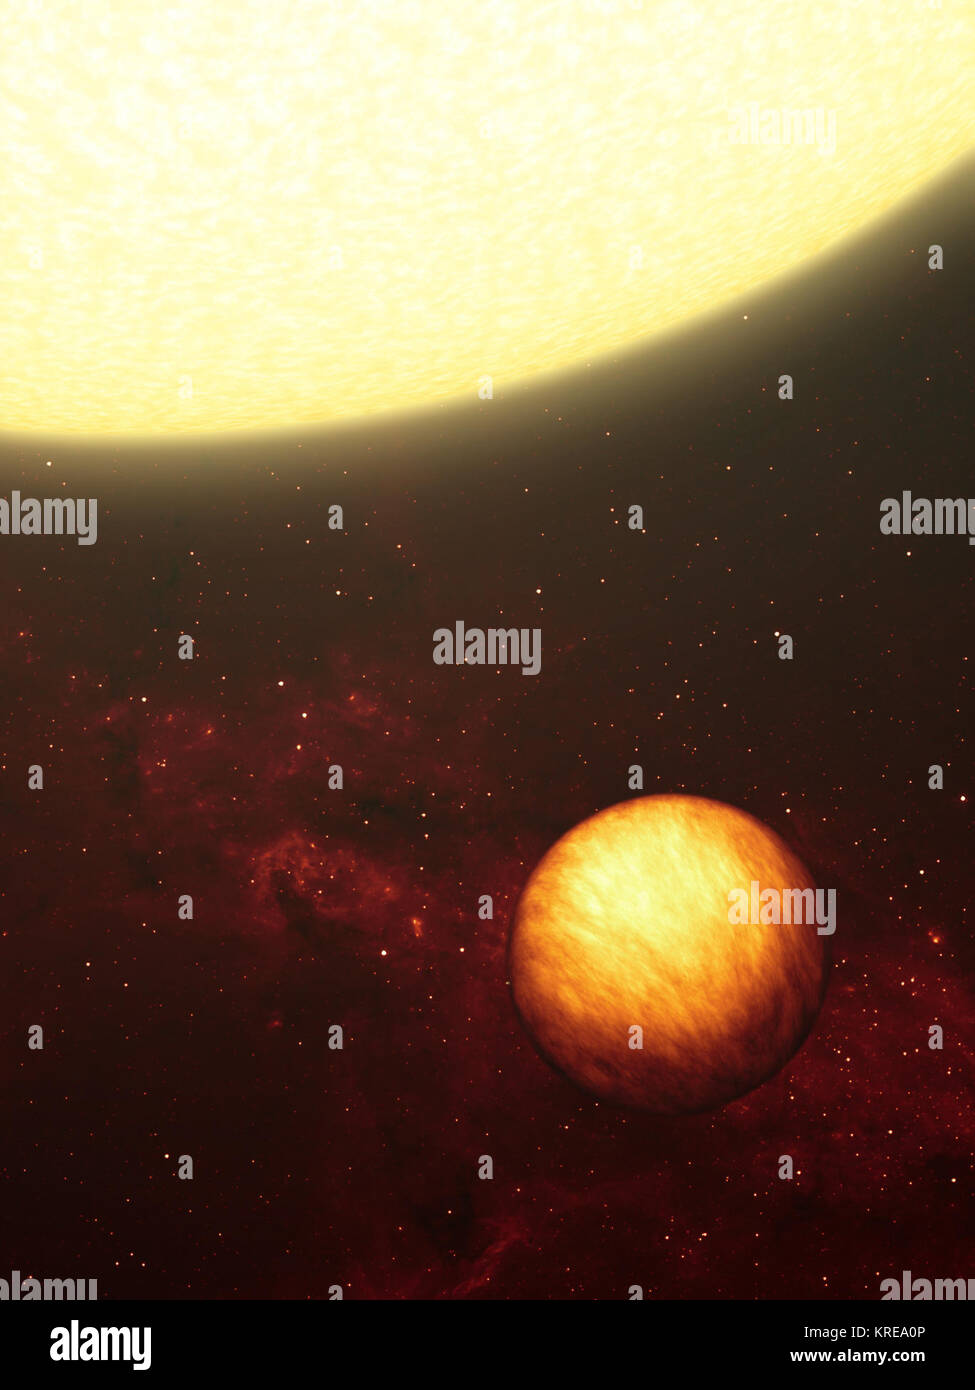 Questo artista del concetto mostra un Giove-come pianeta ammollo fino al cocente raggi del suo vicino a 'ONU.' NASA il telescopio spaziale Spitzer ha utilizzato il suo calore a infrarossi che cercano gli occhi per capire che un gas-pianeta gigante come quello illustrato qui è di due-di fronte, con un lato perennemente in scuro freddo, e l'altro per sempre di vesciche sotto il calore delle sue stelle. L'illustrazione raffigura come il pianeta sembrano occhi a raggi infrarossi, che mostra le variazioni di temperatura in tutta la sua superficie. Il pianeta, chiamato Upsilon Andromedae b, è stato scoperto per la prima volta nel 1996 attorno alla stella Upsilon Andromedae, situato 40 luce-y Foto Stock